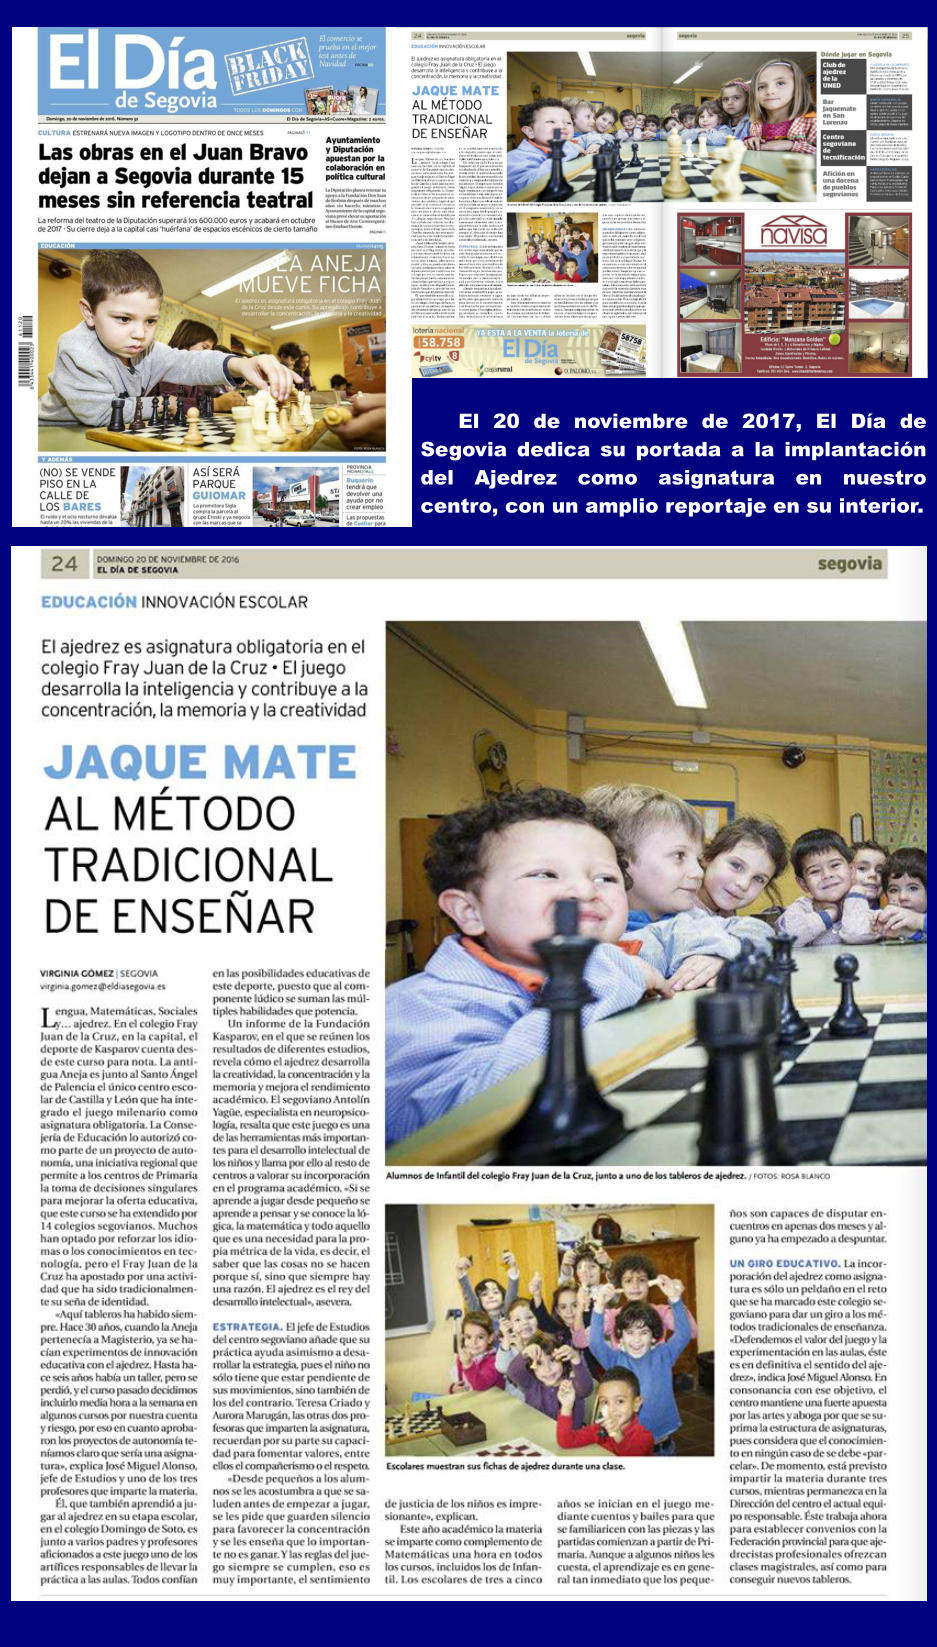 El 20 de noviembre de 2017, El Da de Segovia dedica su portada a la implantacin del Ajedrez como asignatura en nuestro centro, con un amplio reportaje en su interior.